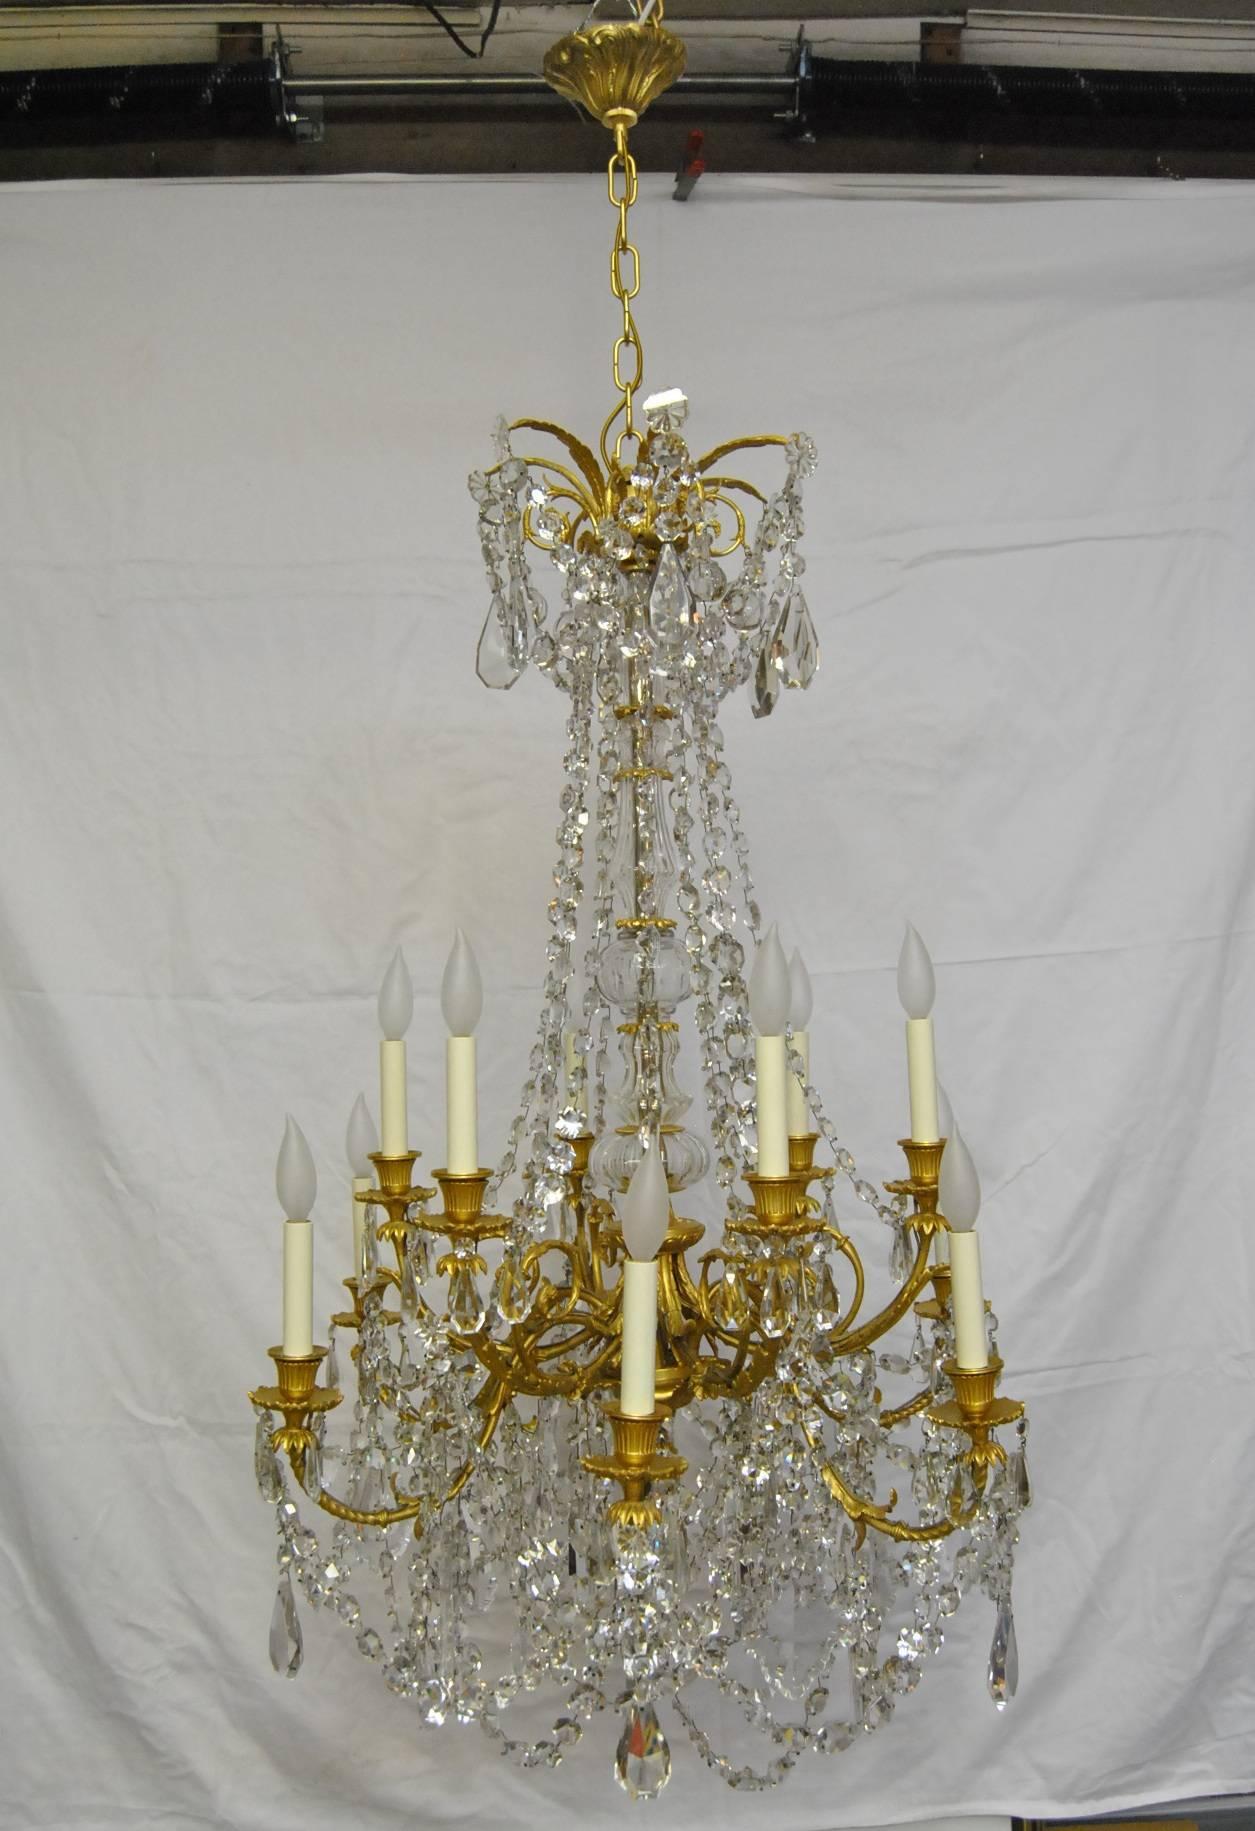 Un magnifique lustre en cristal Empire français à grande échelle. Le corps de ce lustre est fait en bronze doré et a deux couches de bras pour un total de 12 bras. Les bras sont chantournés et contiennent des cristaux de différentes tailles, dont